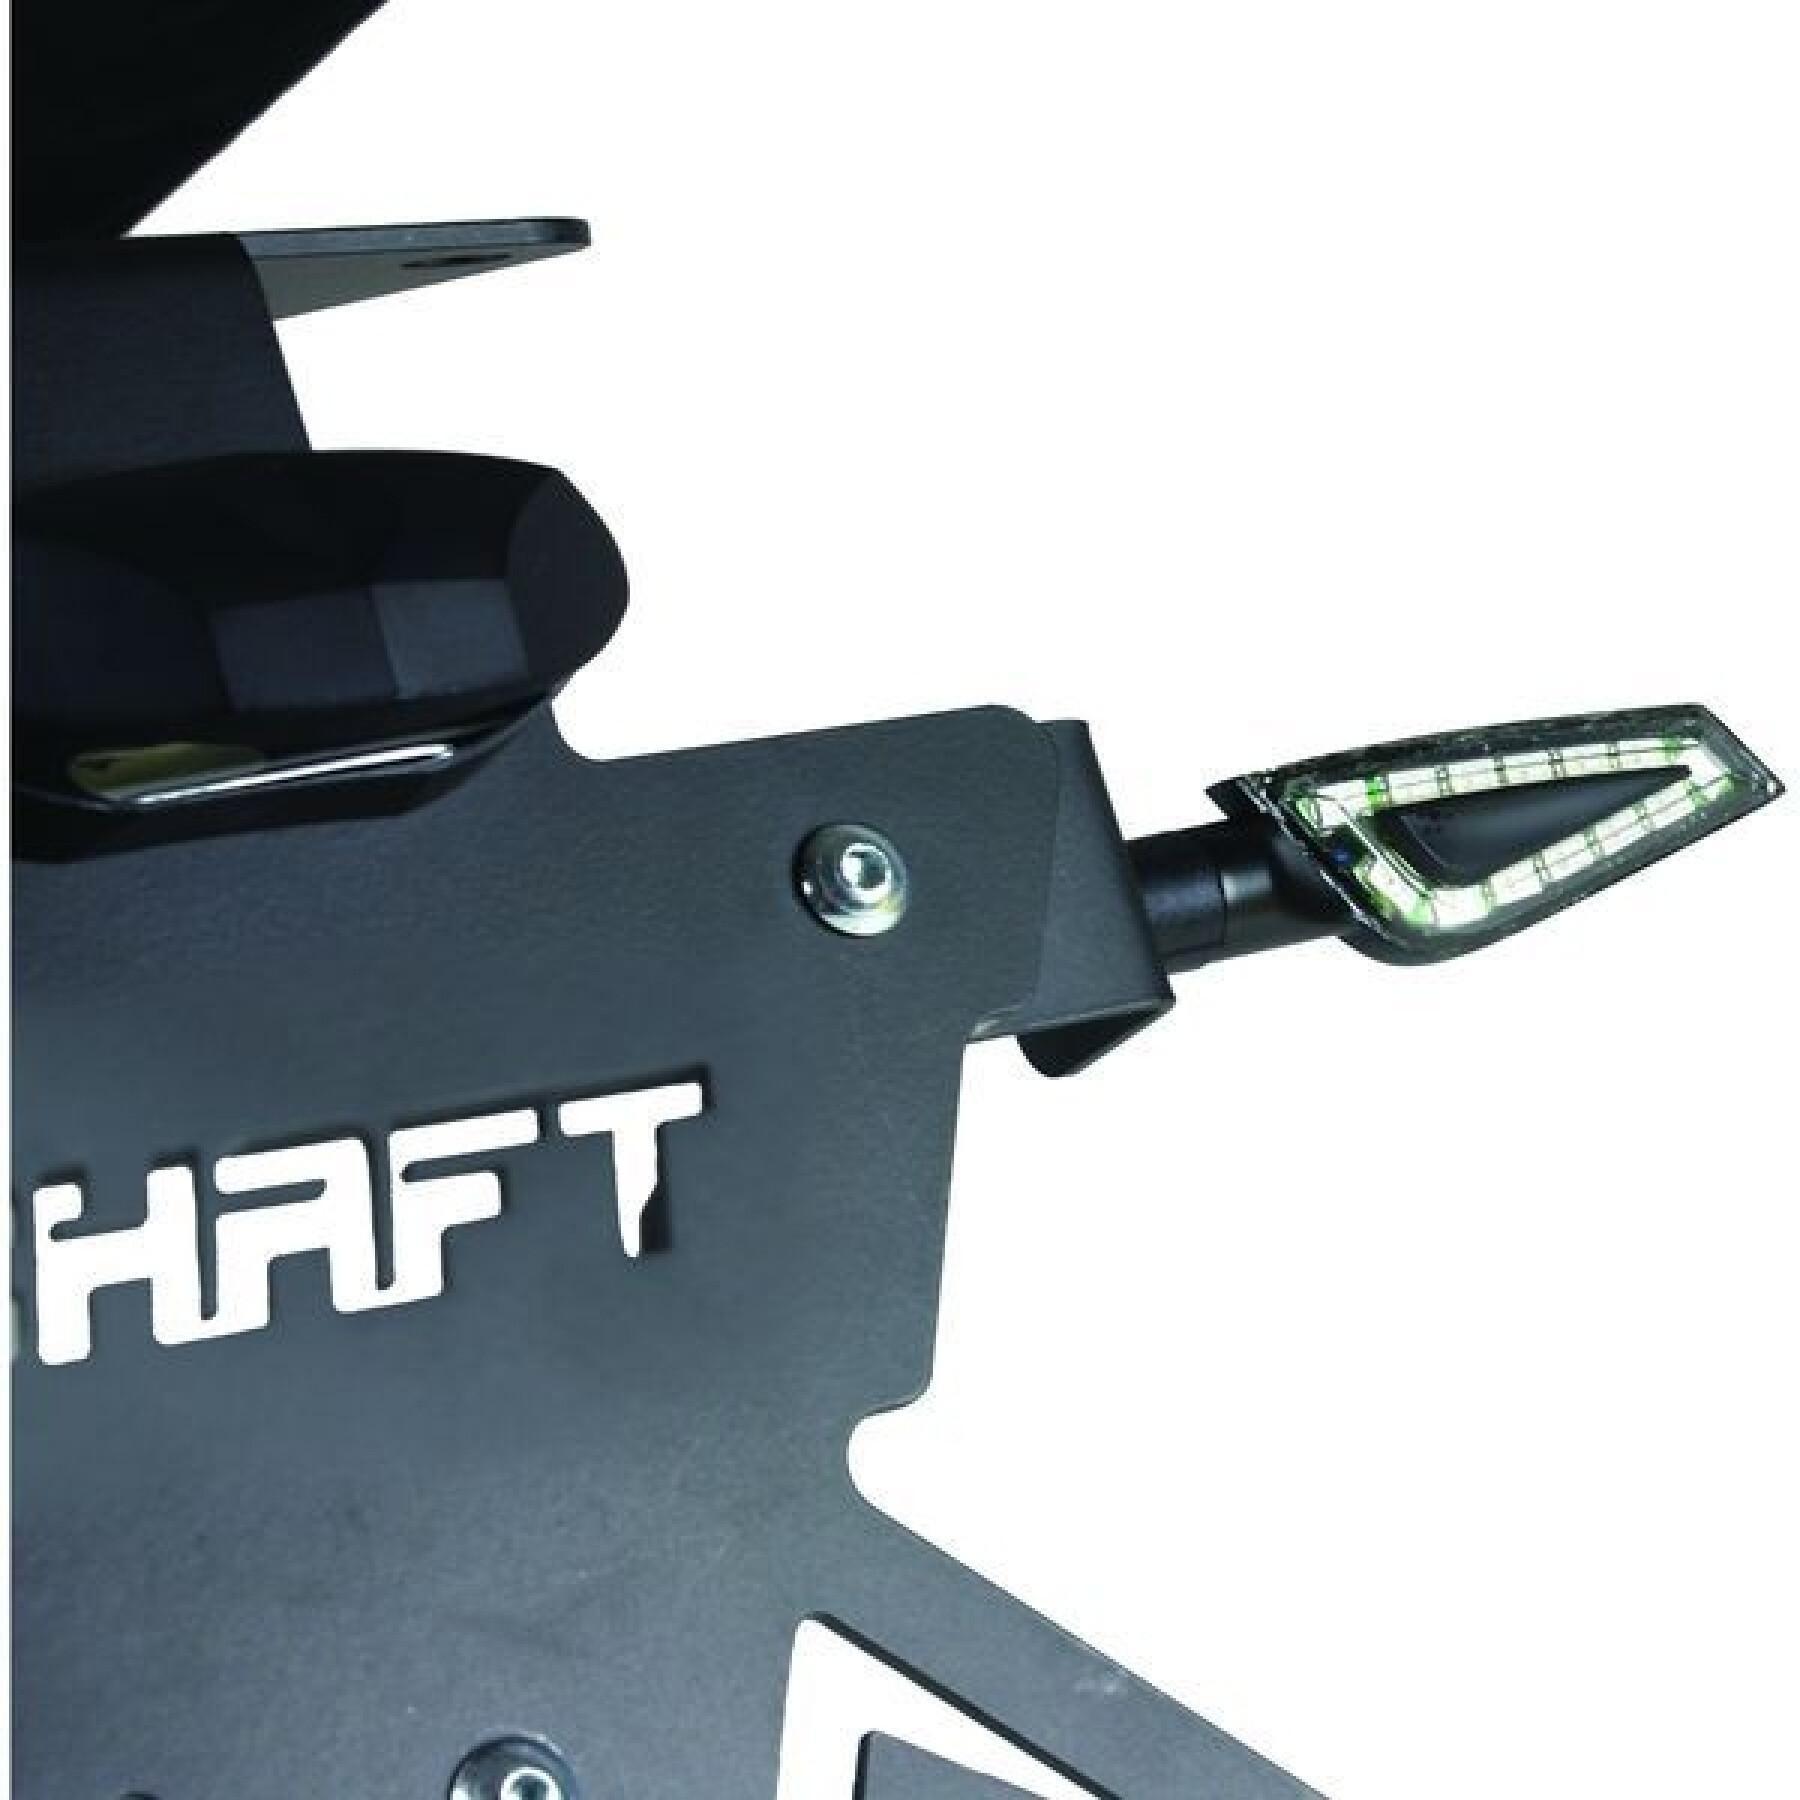 Clignotants LED moto homologués Chaft SHELTER